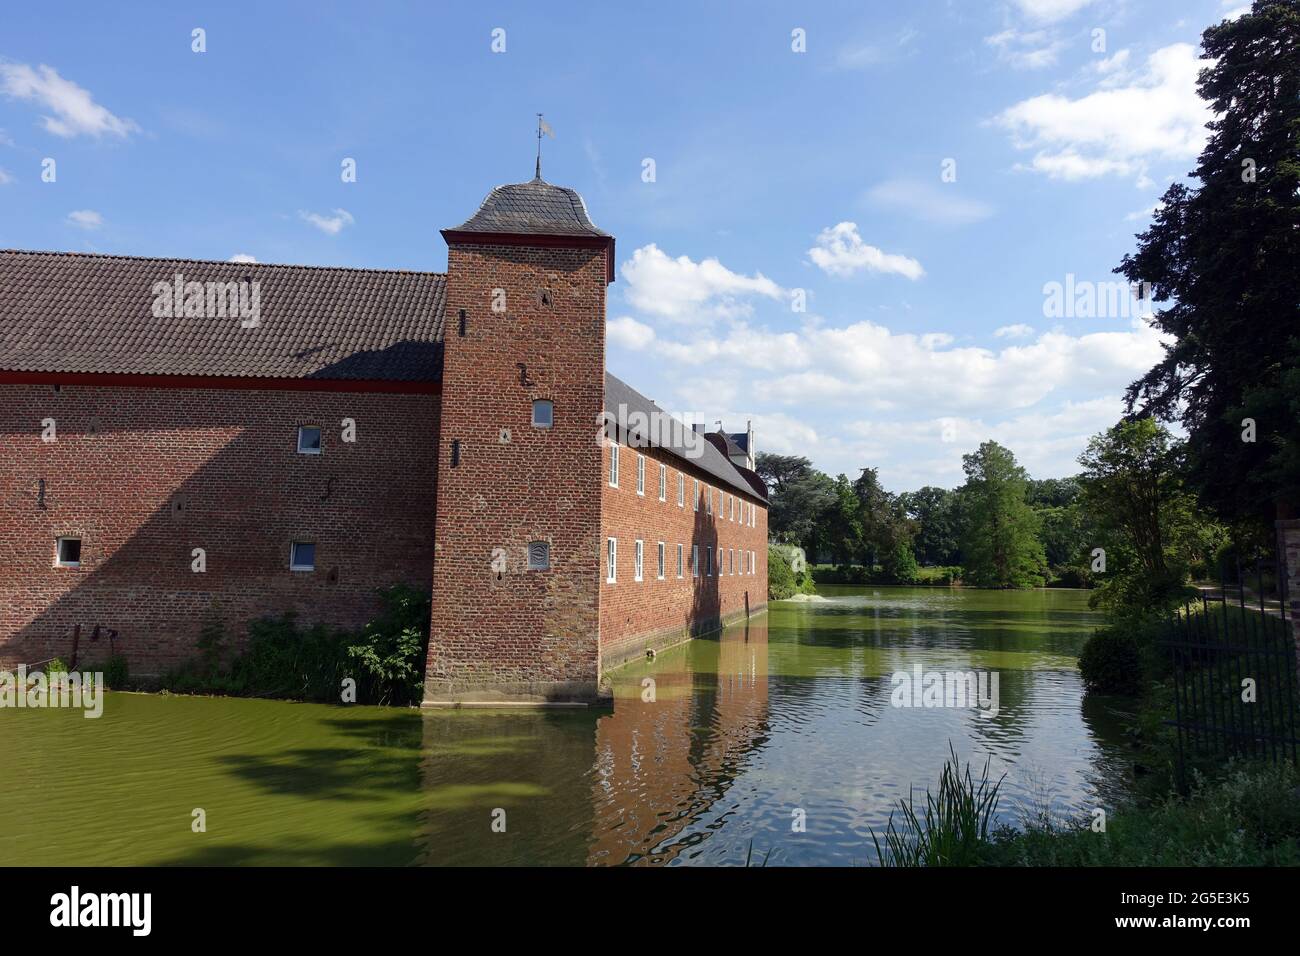 Burg Heimerzheim, mittelalterliche Wasserburg aus dem 14. Jahrhundert - Vorburg mit Wassergraben, Swisttal, Nordrhein-Westfalen, Deutschland Stock Photo